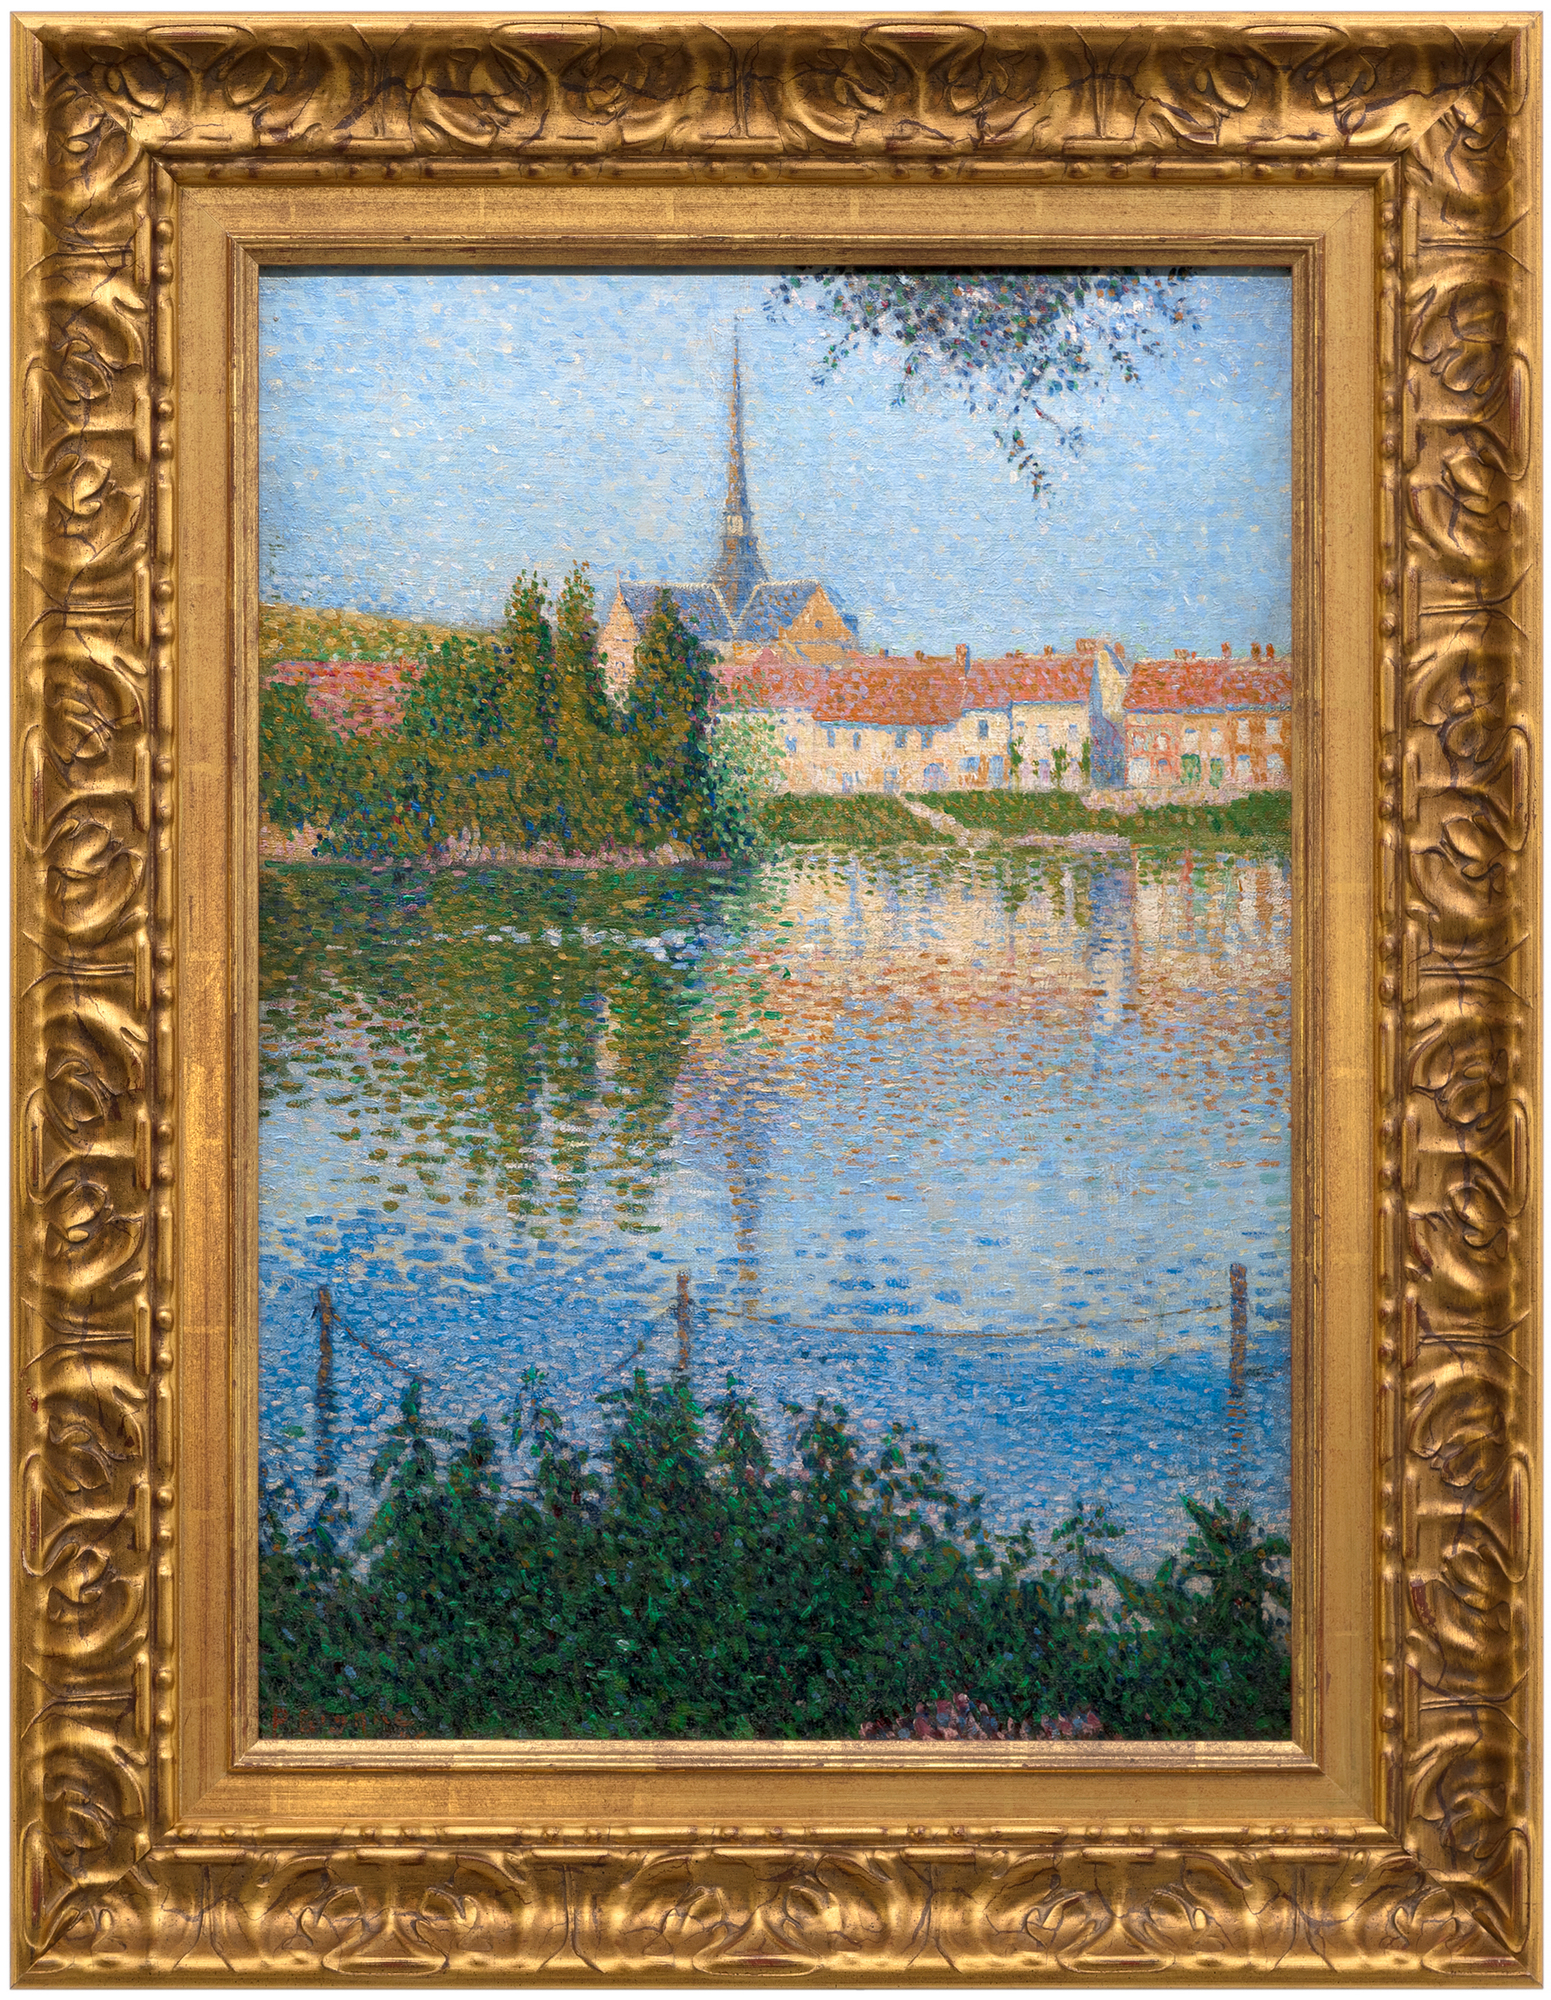 1886年5月15日，乔治-修拉（Georges Seurat）的最高成就《拉格朗日岛的星期天下午》在第八届印象派画展上亮相，一场新艺术运动的视觉宣言就此诞生。修拉可以称得上是最初的 "科学印象派"，其创作方式后来被称为点彩主义或分割主义。然而，是他的朋友和知己，24岁的保罗-西尼亚克，以及他们不断的对话，导致了他们在理解光和颜色的物理学和出现的风格上的合作。西尼亚克是一个没有受过训练的印象派画家，但却是一个才华横溢的画家，他的气质完全适合于实现艰苦的笔触和色彩所需的严格和纪律性。西尼亚克很快就吸收了这种技术。他还见证了修拉两年来在巨大的《大山》上建立无数个未混合的色点的艰辛历程。西尼亚克是个外向的人，修拉是个内向的人，他们一起颠覆了印象派的进程，并改变了现代艺术的进程。